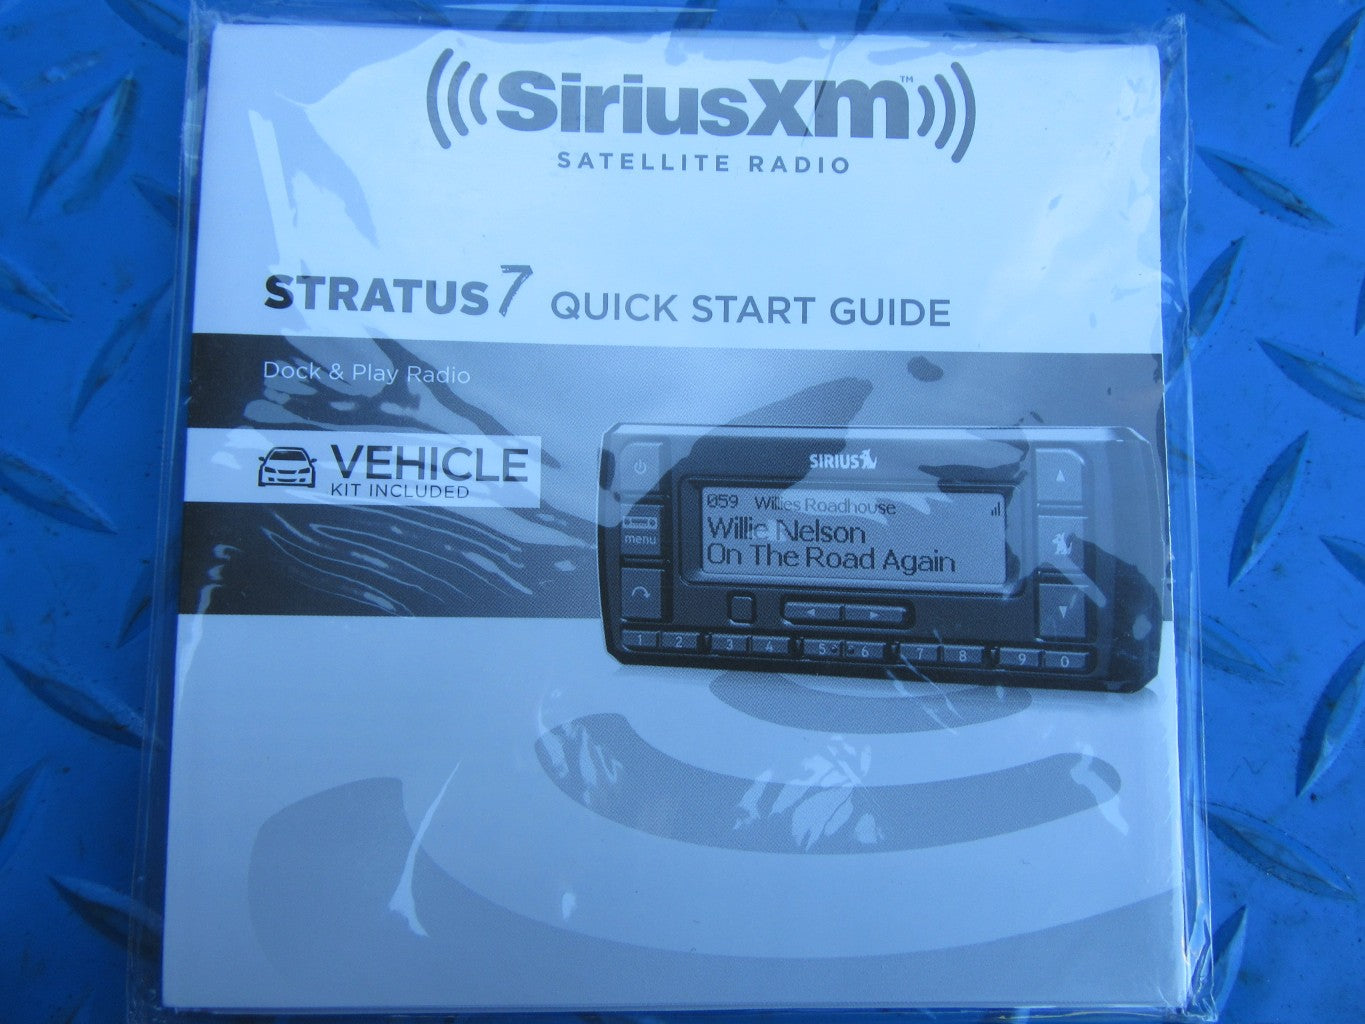 Maserati Sirius XM Stratus 7 satellite radio vehicle kit NEW #0284